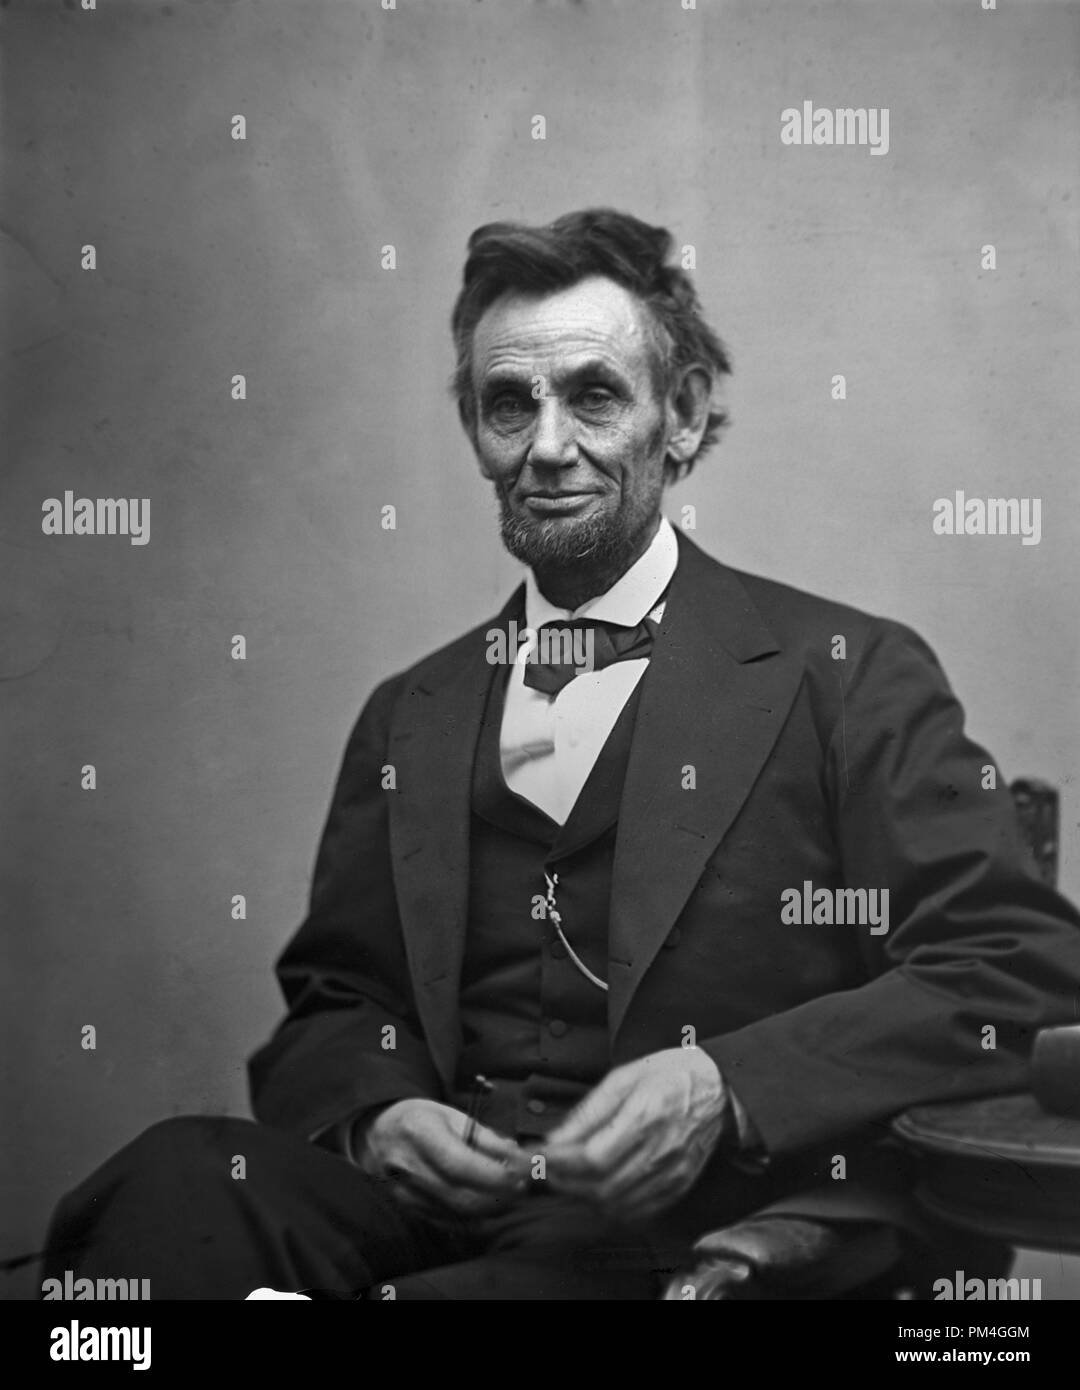 Abraham Lincoln, tres cuartos de longitud vertical, sentado y sosteniendo sus anteojos y un lápiz. El 5 de febrero de 1865. Archivo de referencia # 1003 012tha Foto de stock